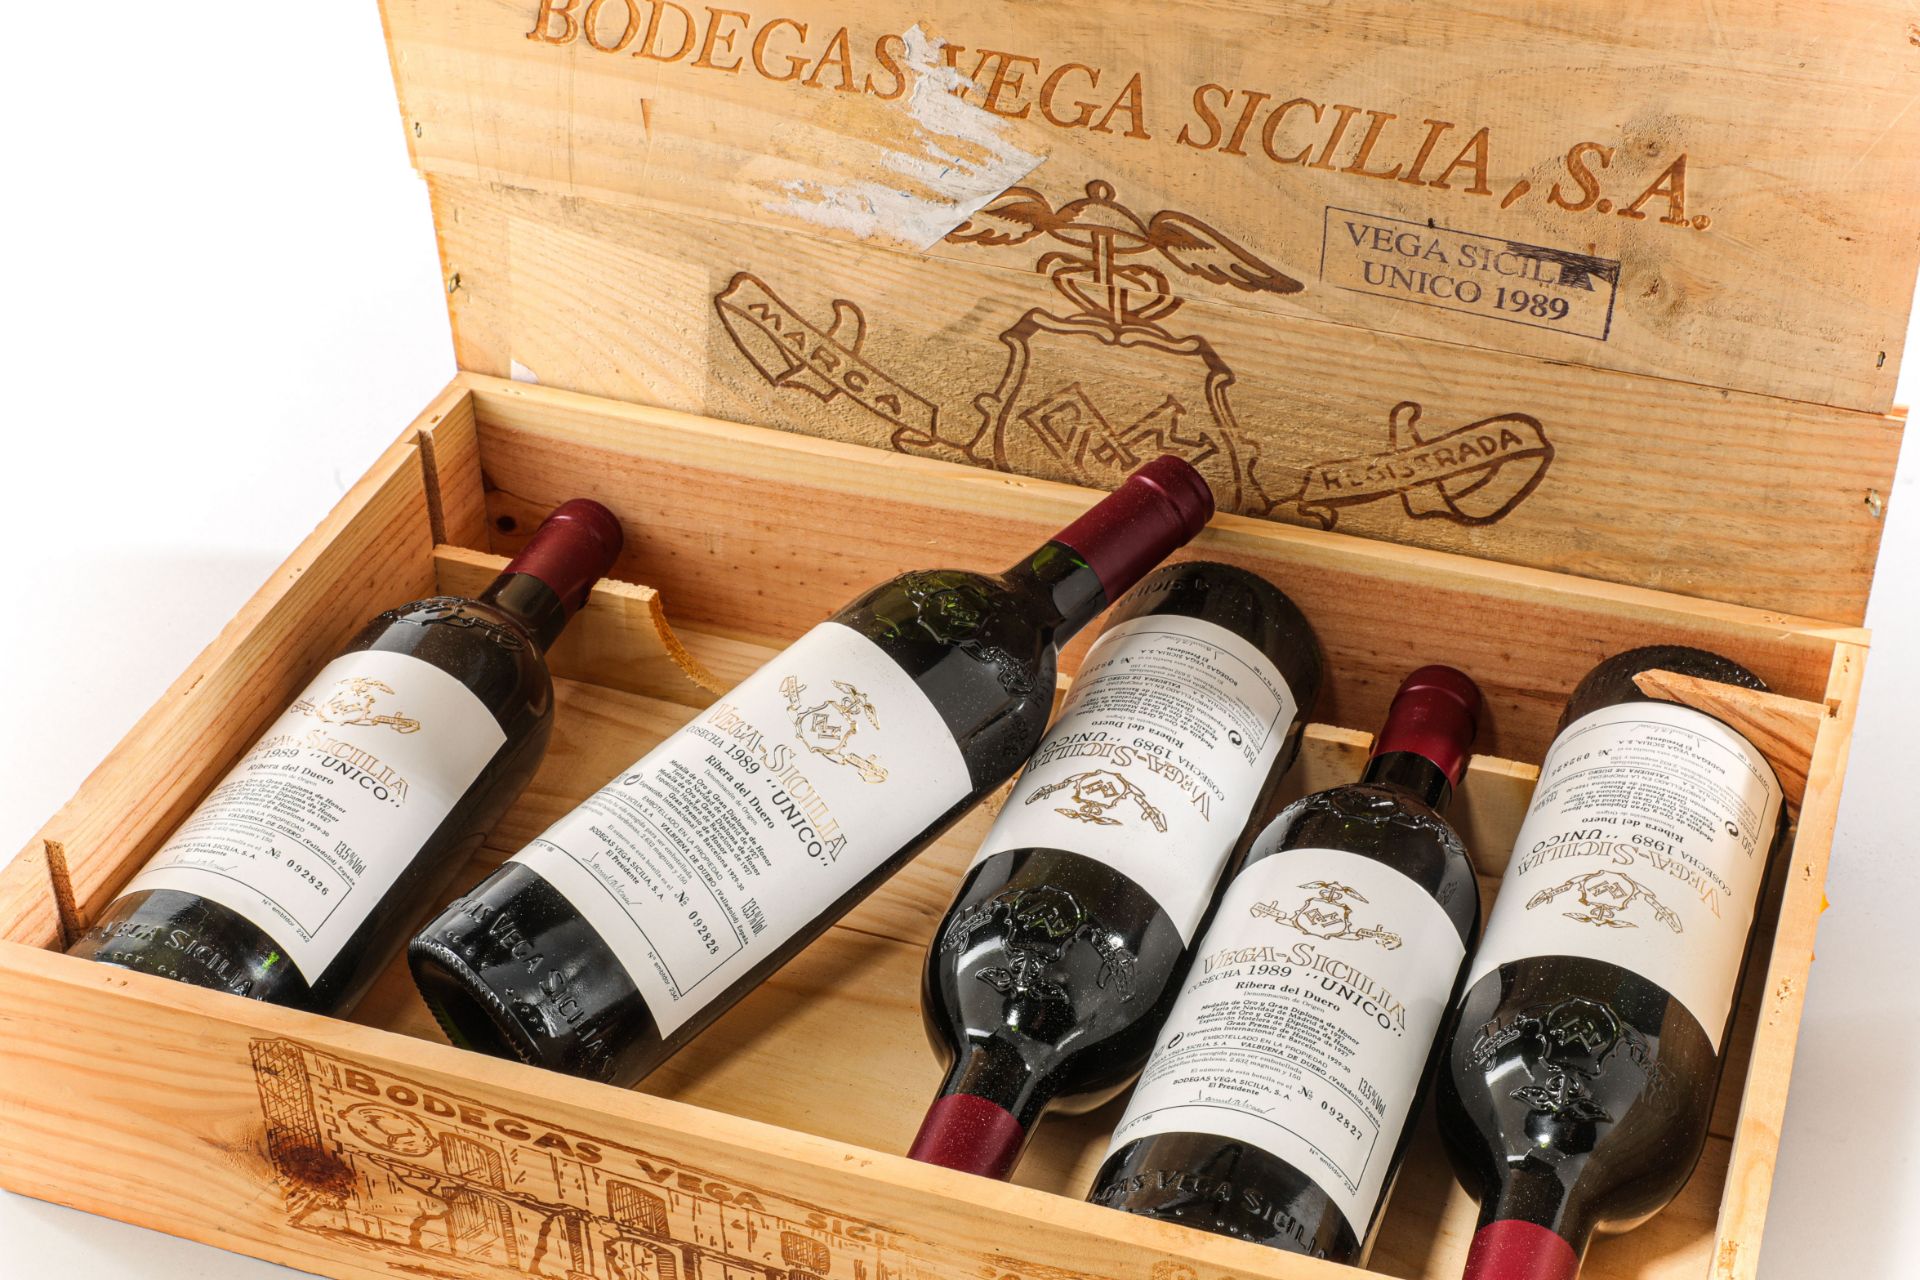 VEGA SICILIO UNICO 5 bouteilles dans sa caisse en bois d'origine Ribeira del Duero N°092824 à - Image 5 of 8